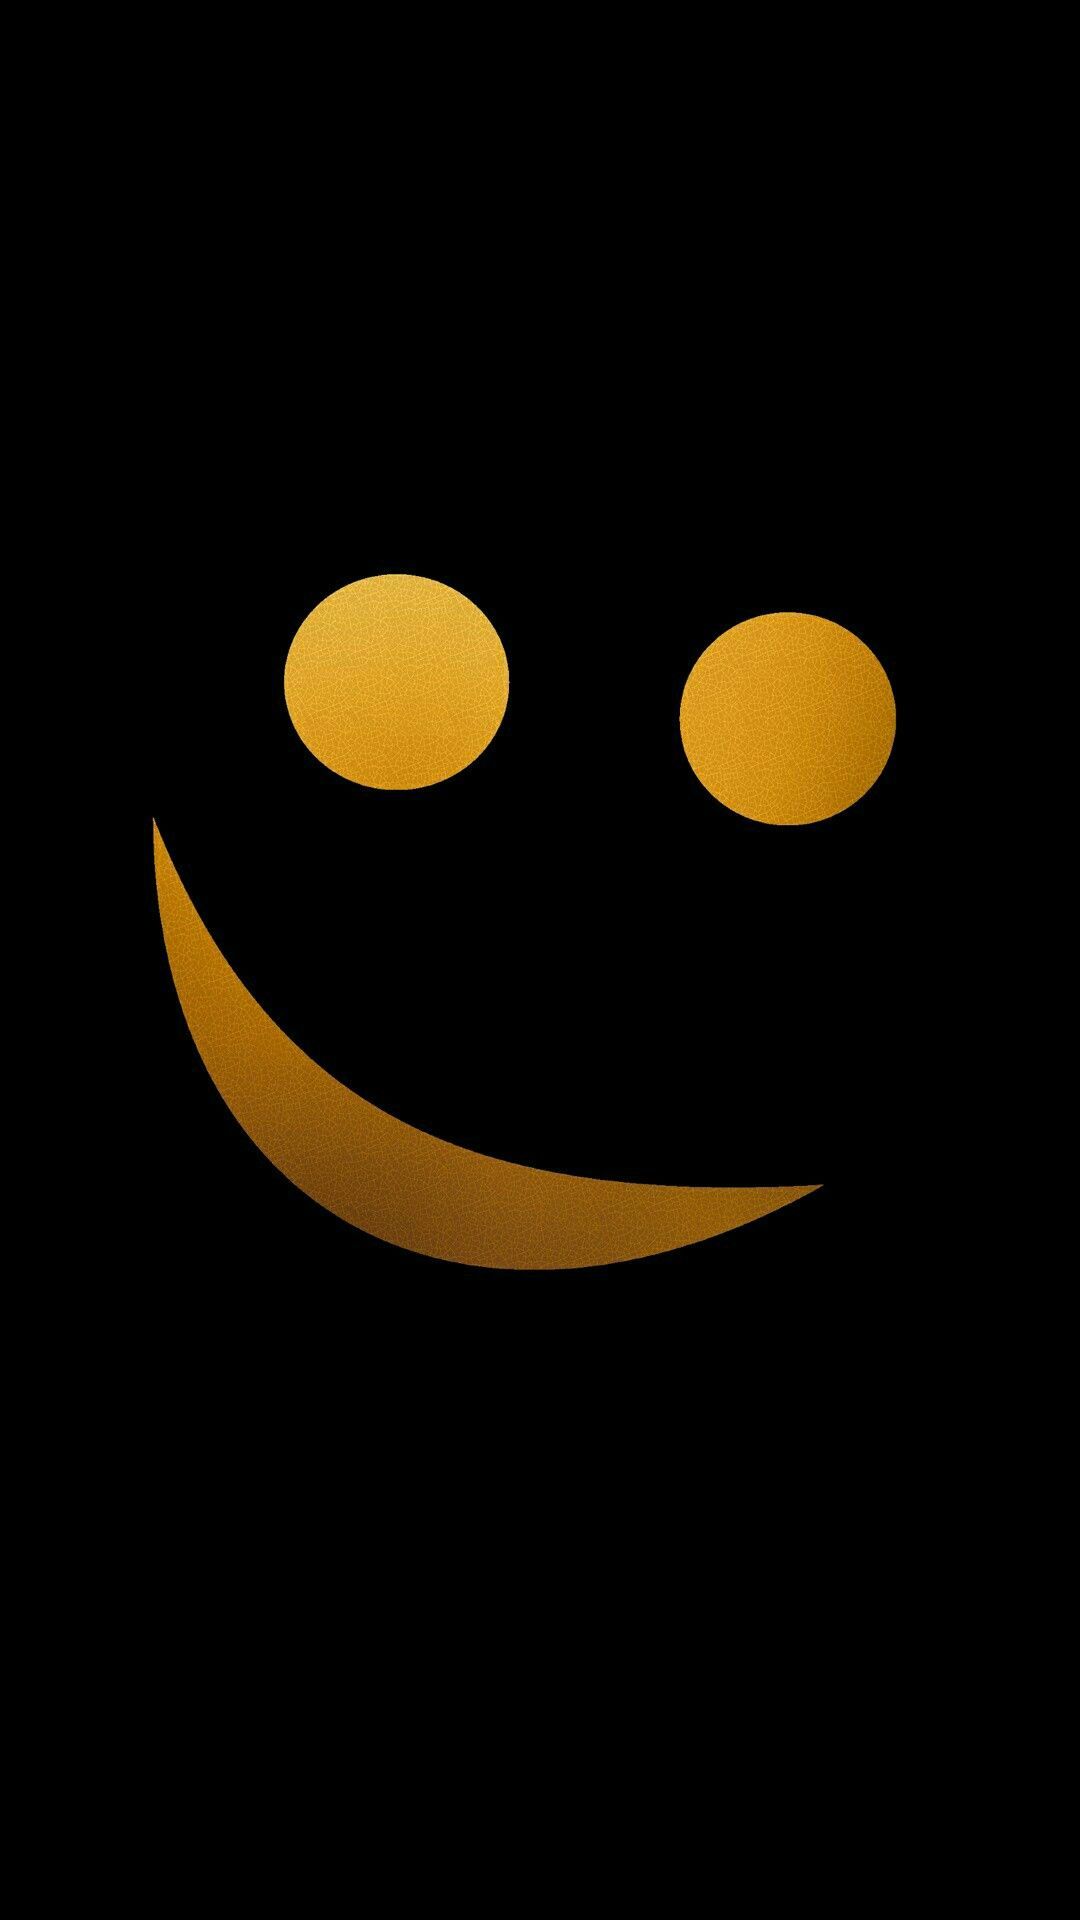 Black Emoji Wallpapers - Wallpaper Cave